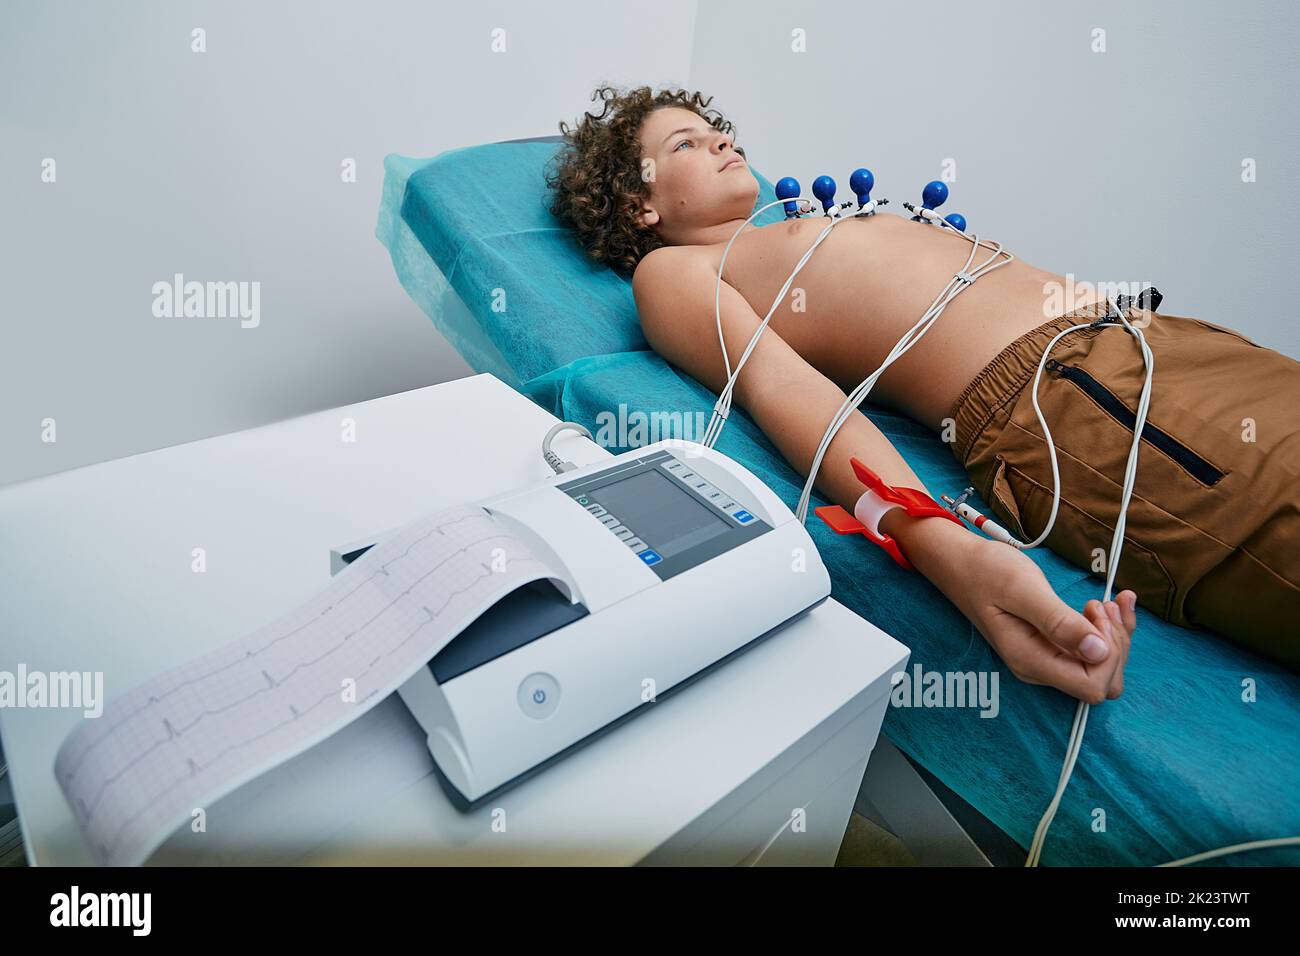 Männliches Kind, das während des EKG-Verfahrens mit Saug-Brustelektroden auf dem Bett liegt. Elektrokardiographie für Kinder Stockfoto